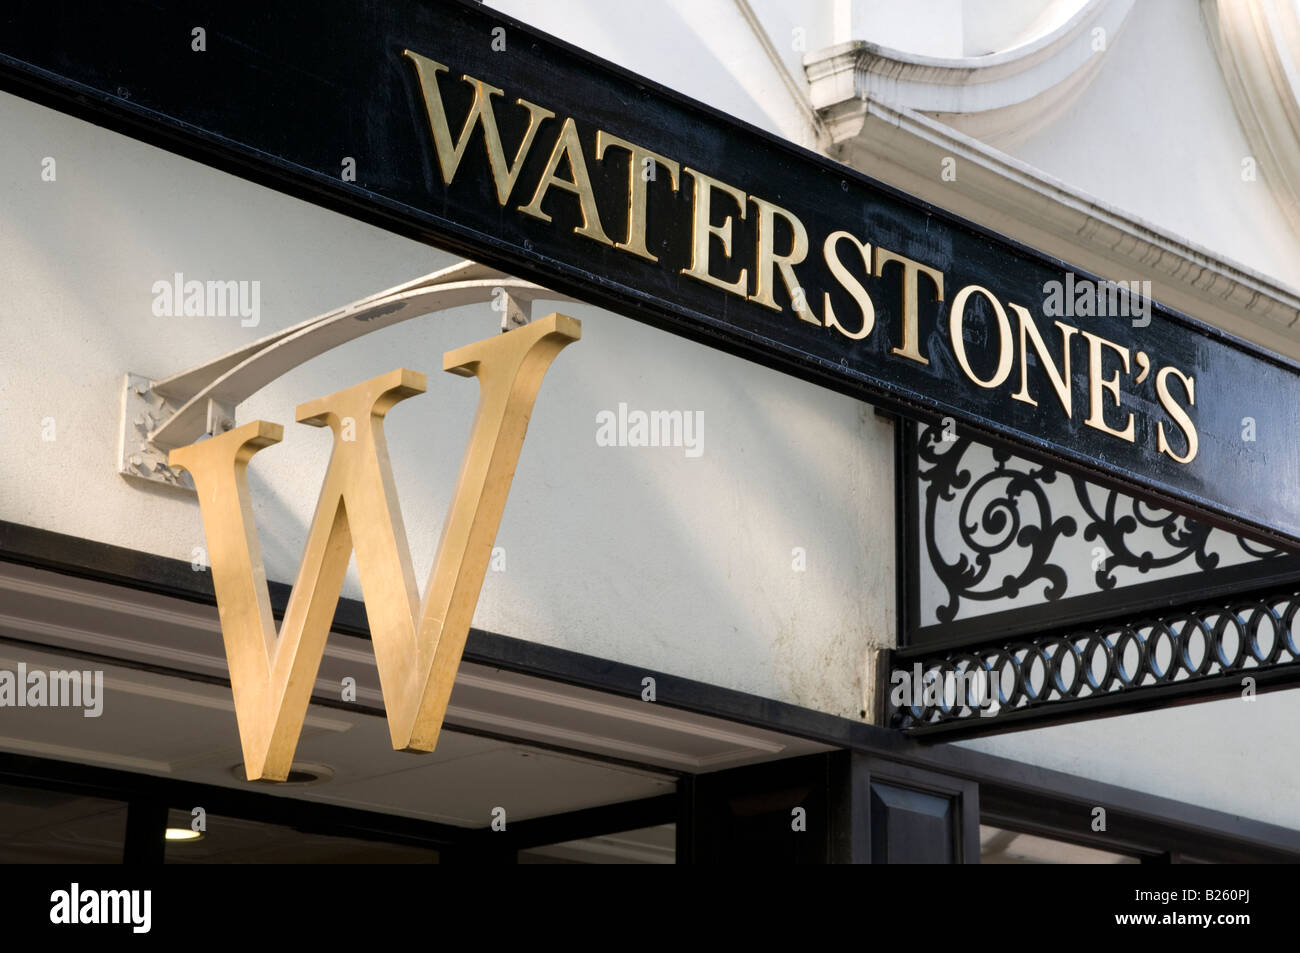 Waterstone's bookshop Londra Inghilterra REGNO UNITO Foto Stock